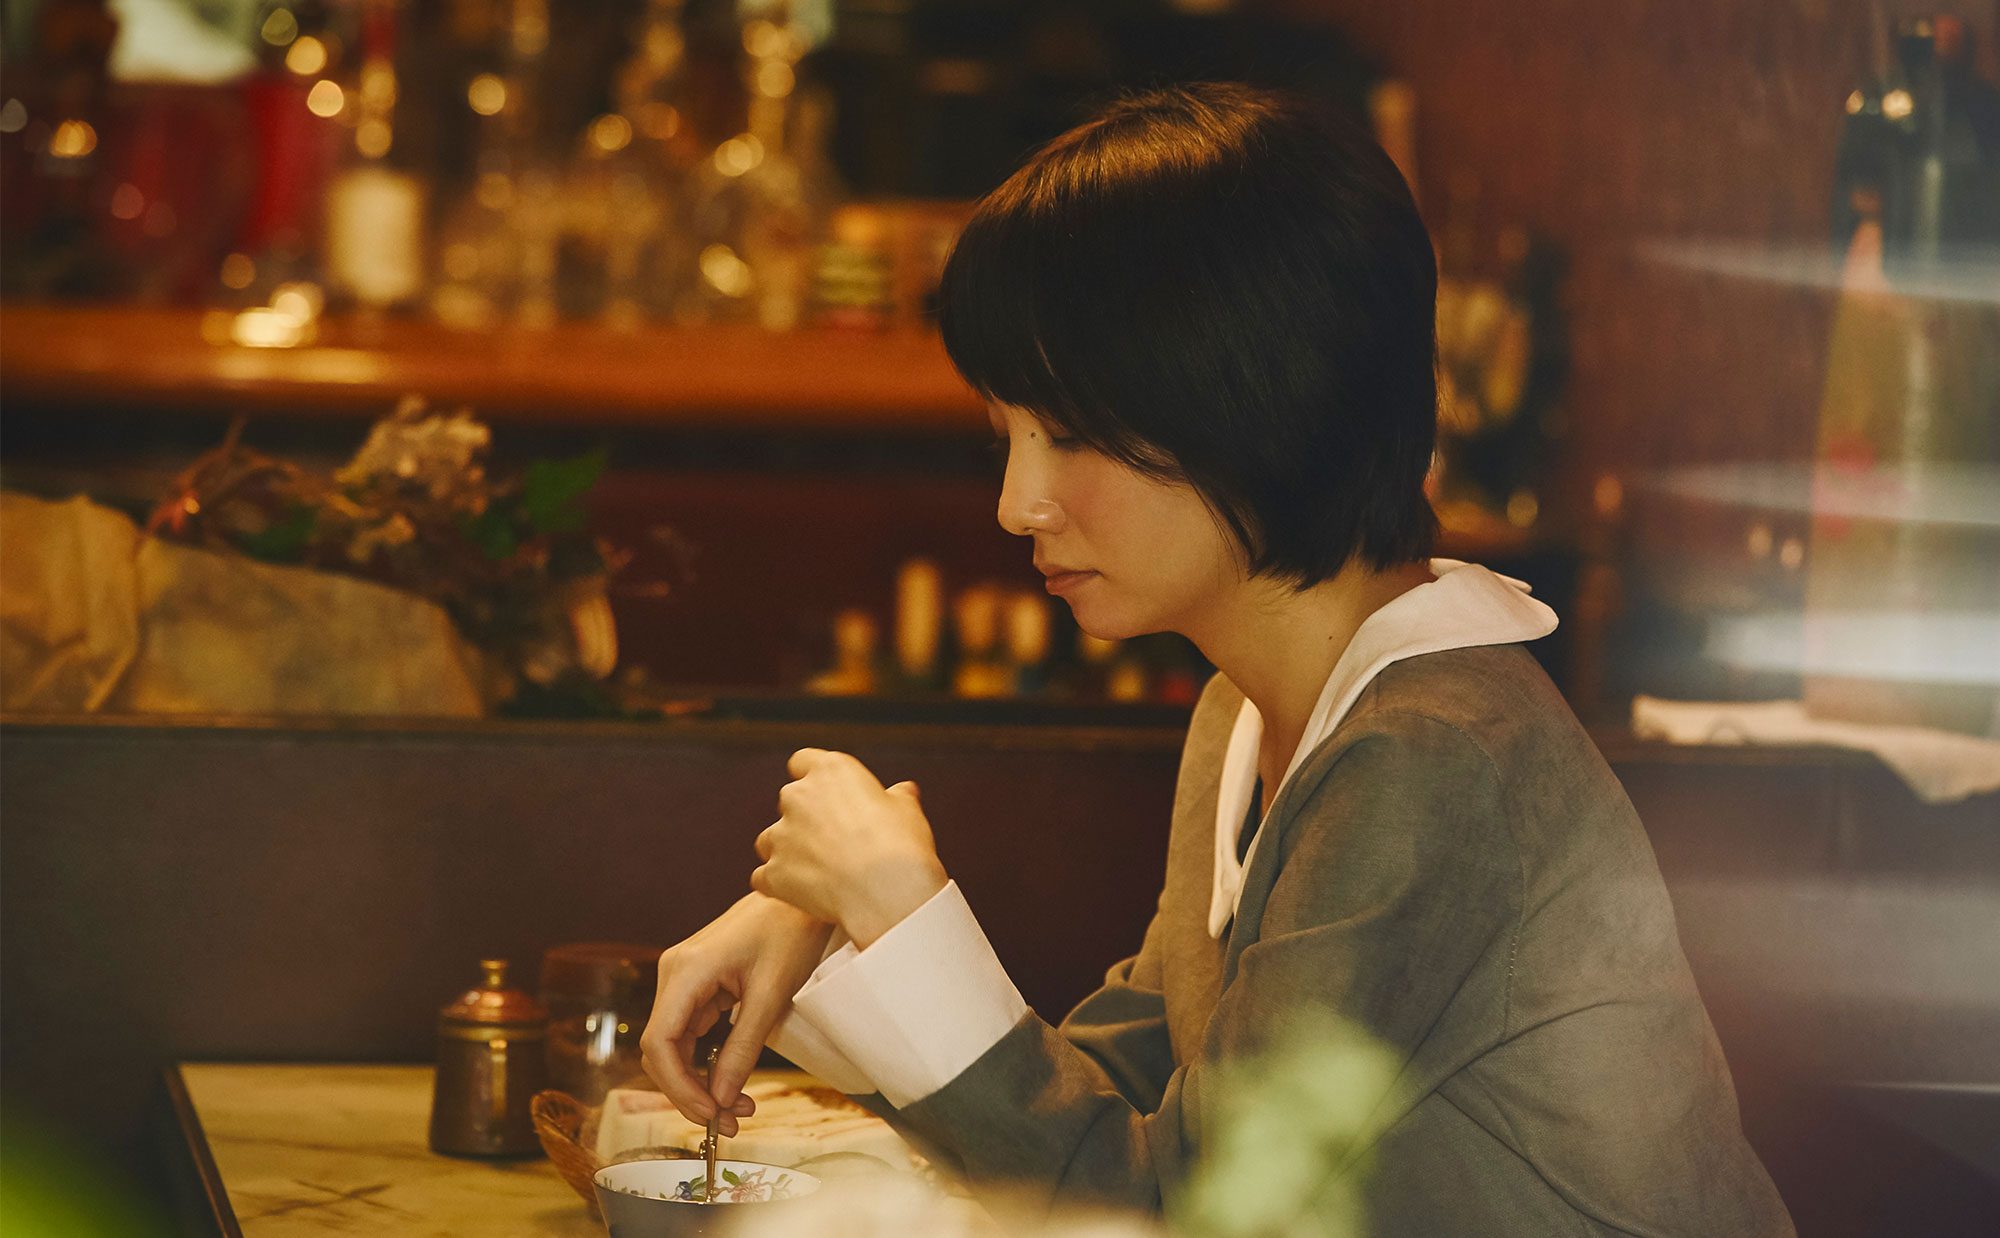 ホームズ ゆっくりと流れる時間を楽しむ 京都でレトロな純喫茶巡り 暮らし方から物件探し